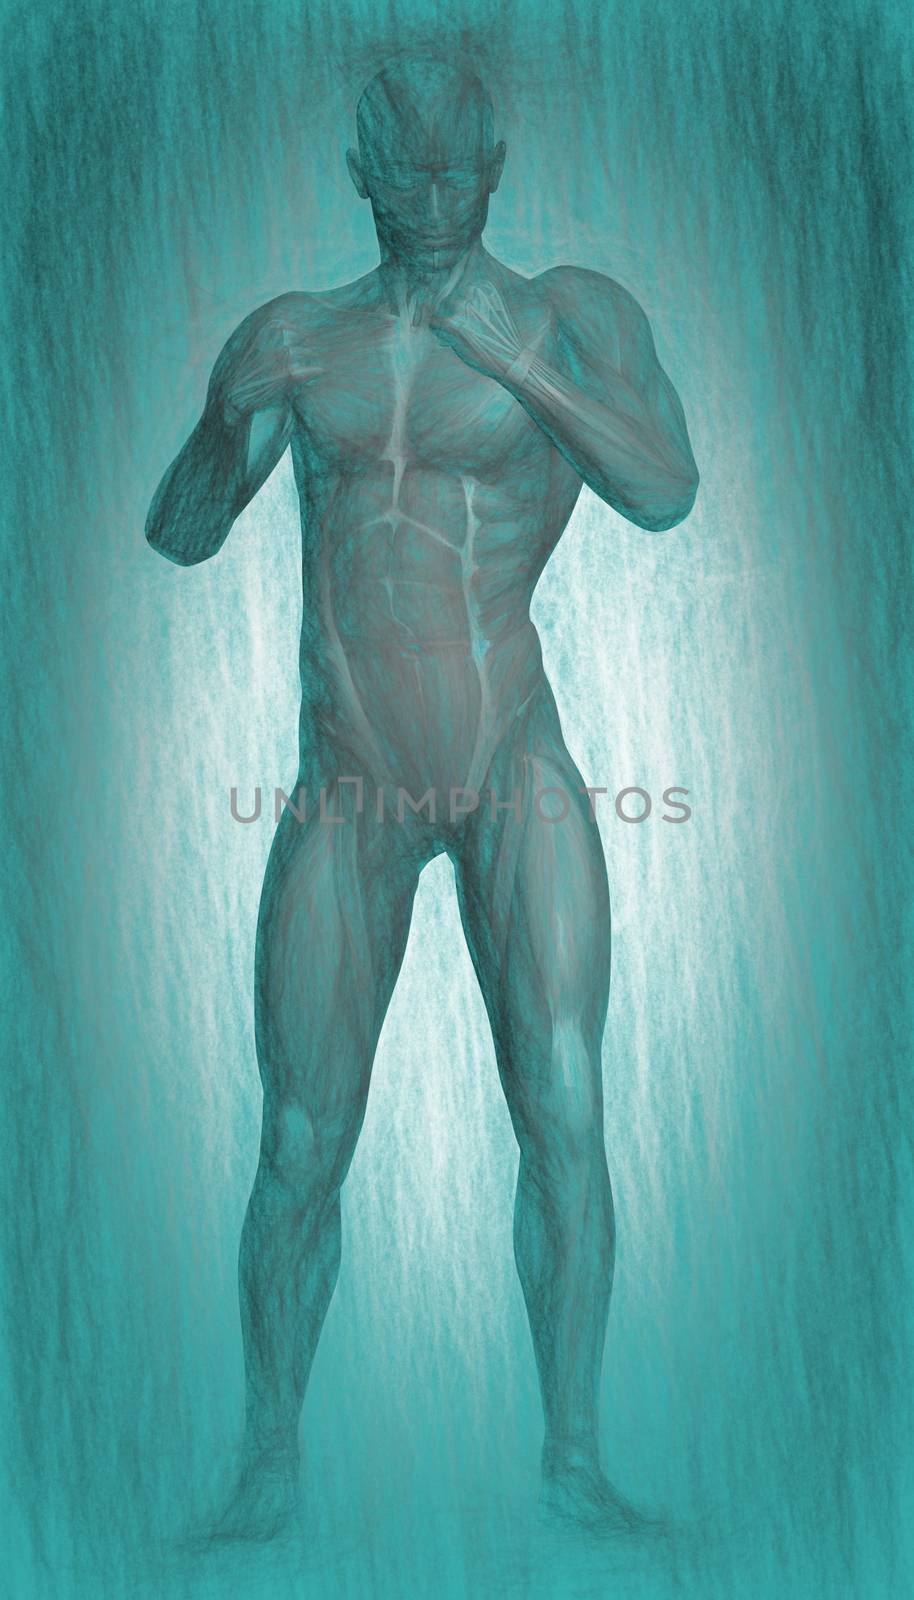 Human Anatomy - Male Muscles by vitanovski